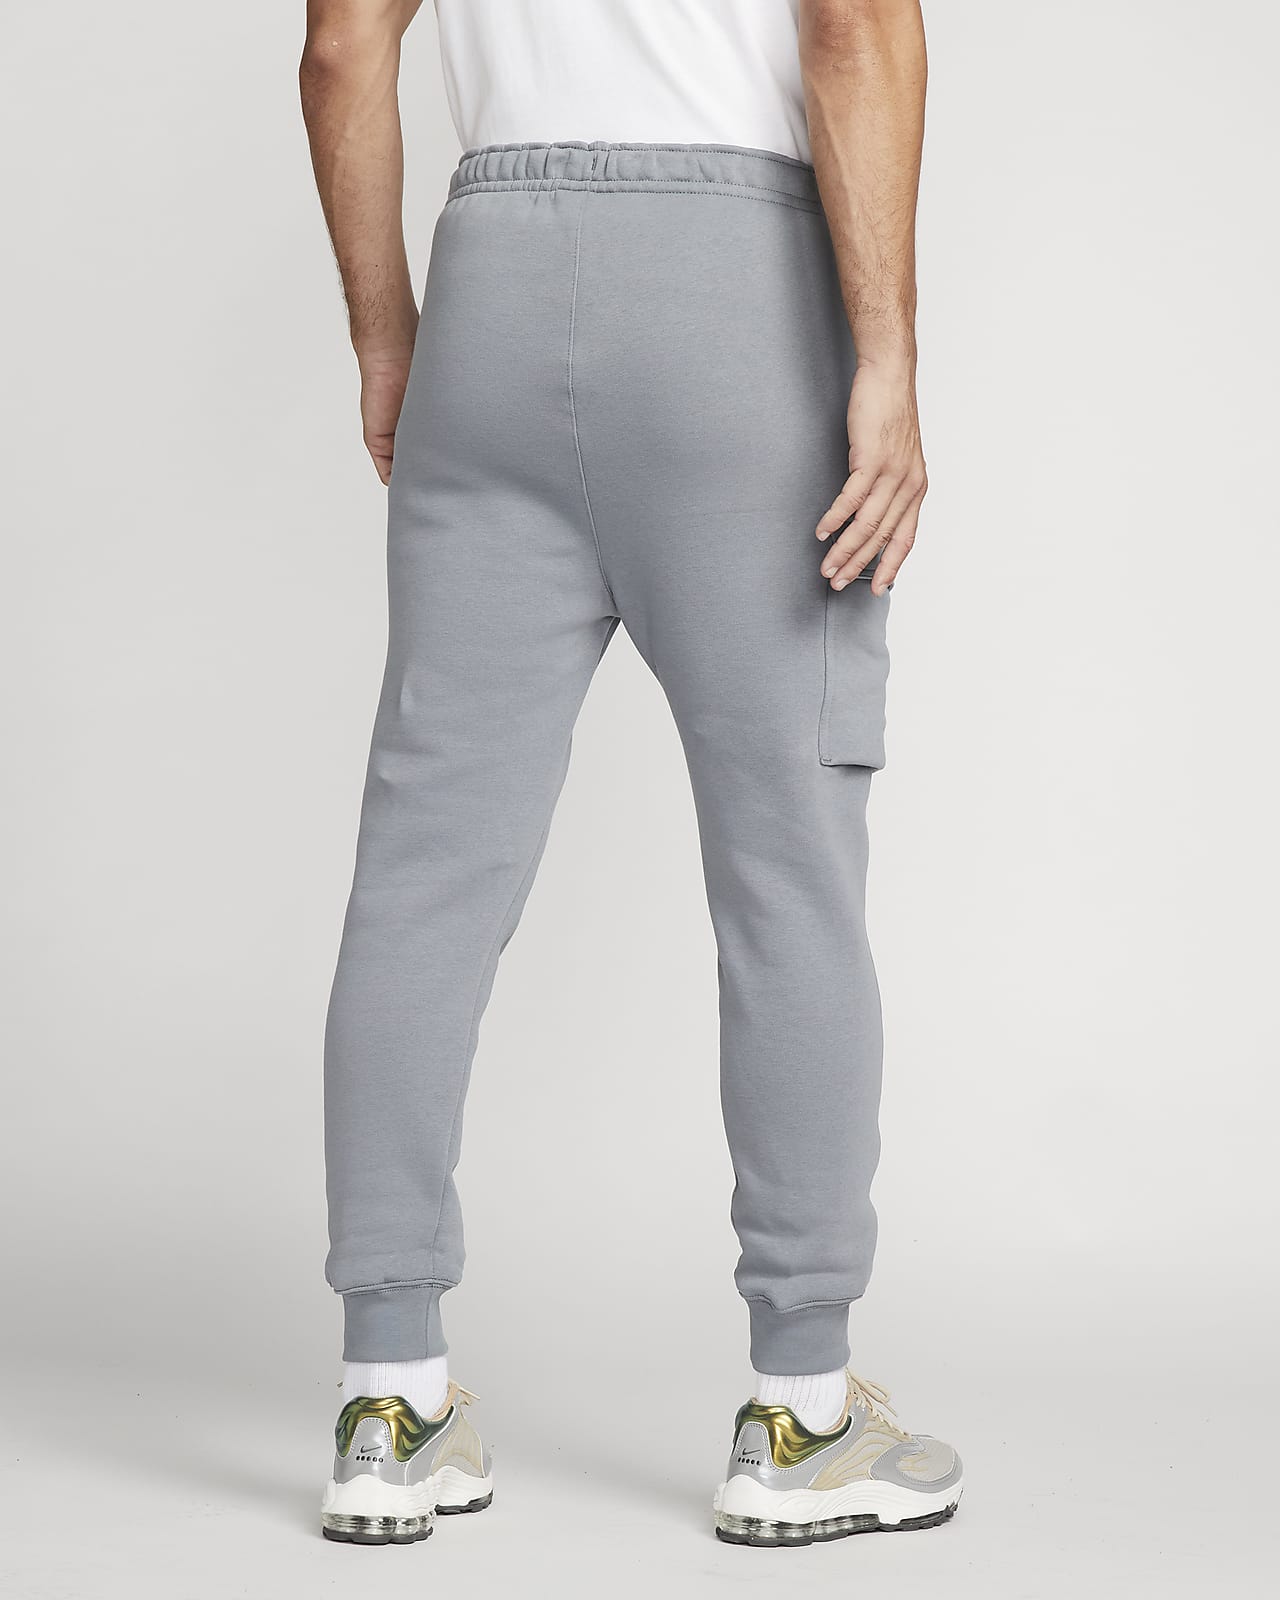 Nike Sportswear Standard Issue Men's Cargo Trousers. Nike LU